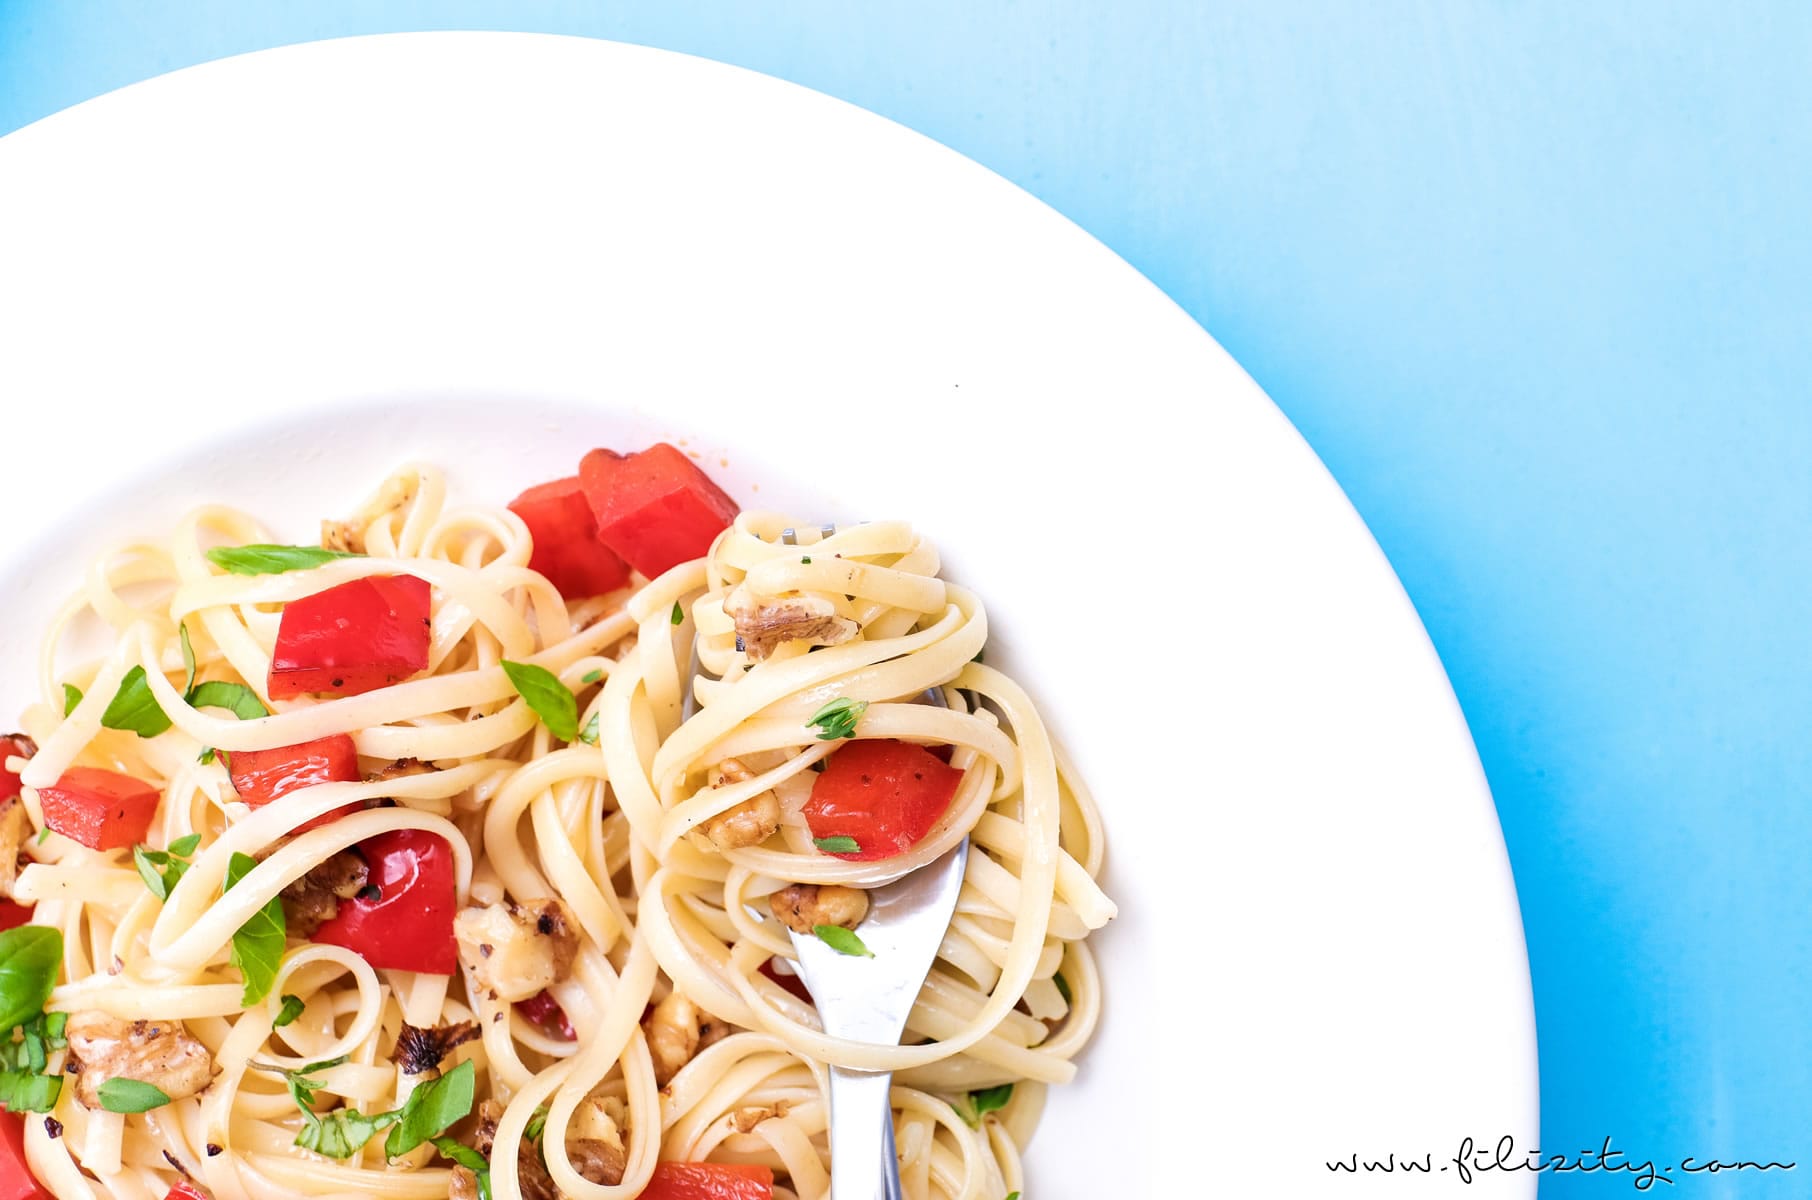 Linguine mit Paprika und Walnüssen - Einfaches und leckeres Pasta-Rezept ohne Soße | Nudeln kochen kann jeder! | Filizity.com | Food-Blog aus dem Rheinland #pasta #sommer